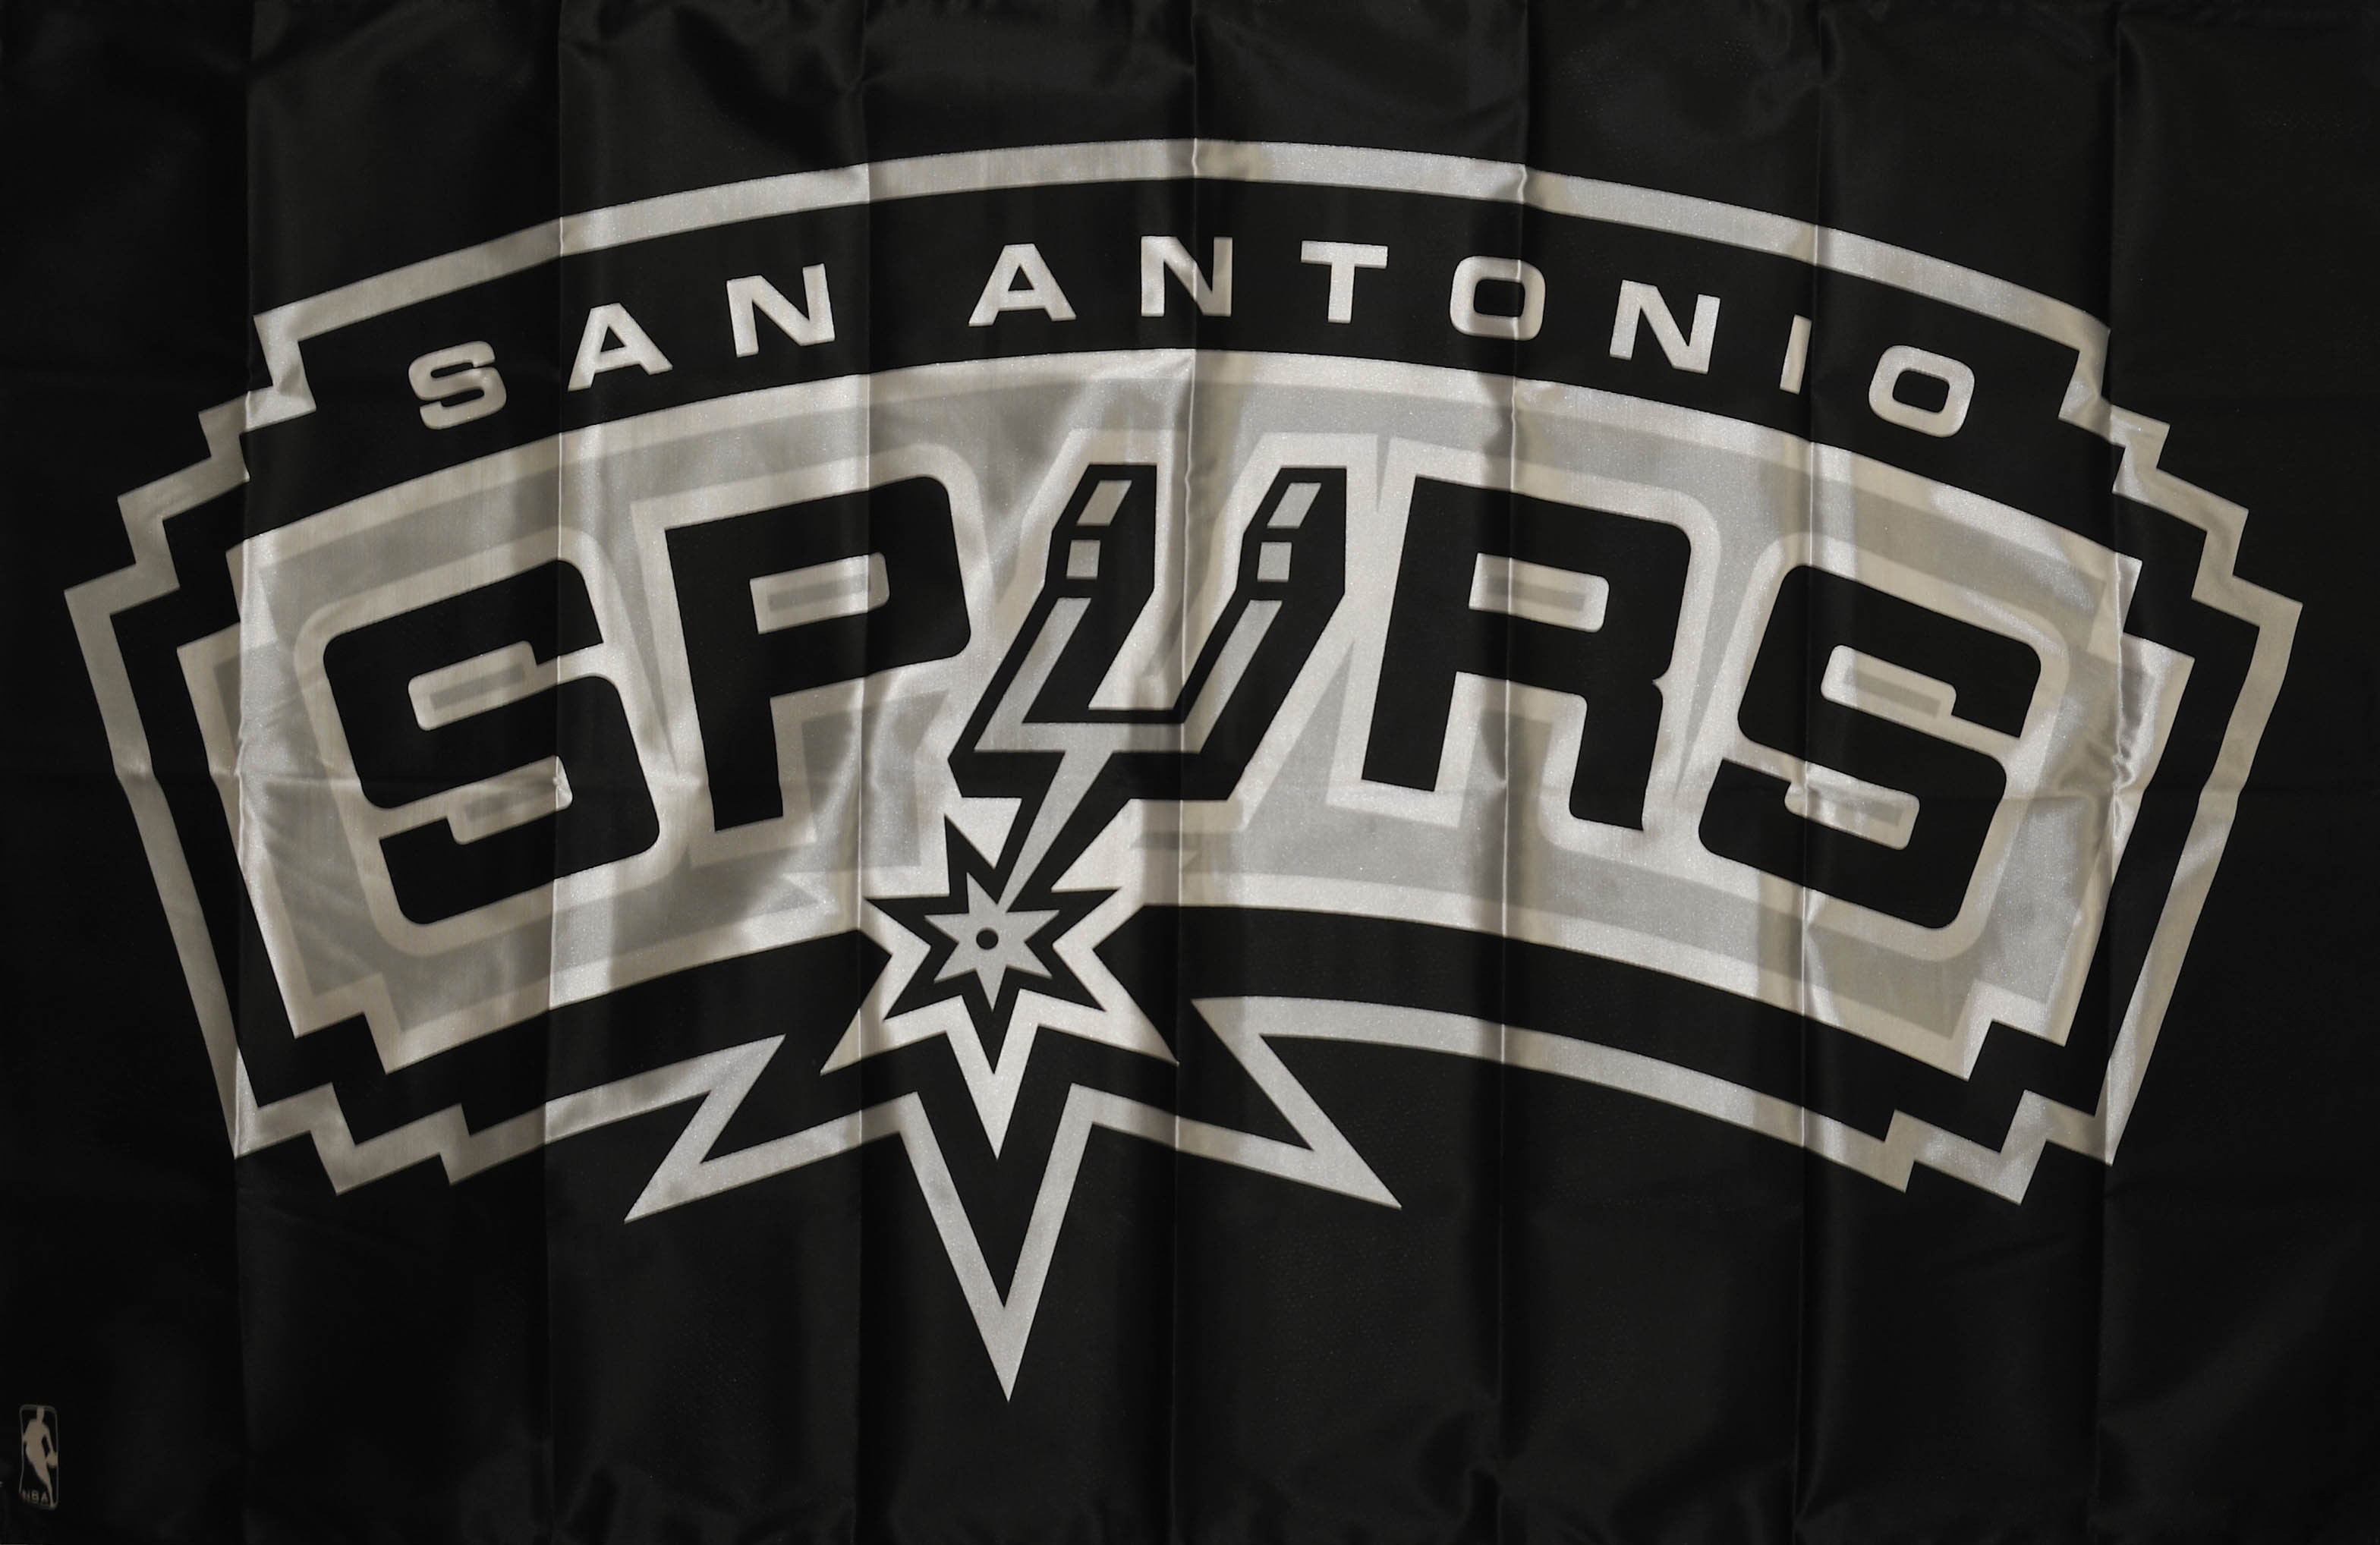 San Antonio Spurs Wallpaper Image